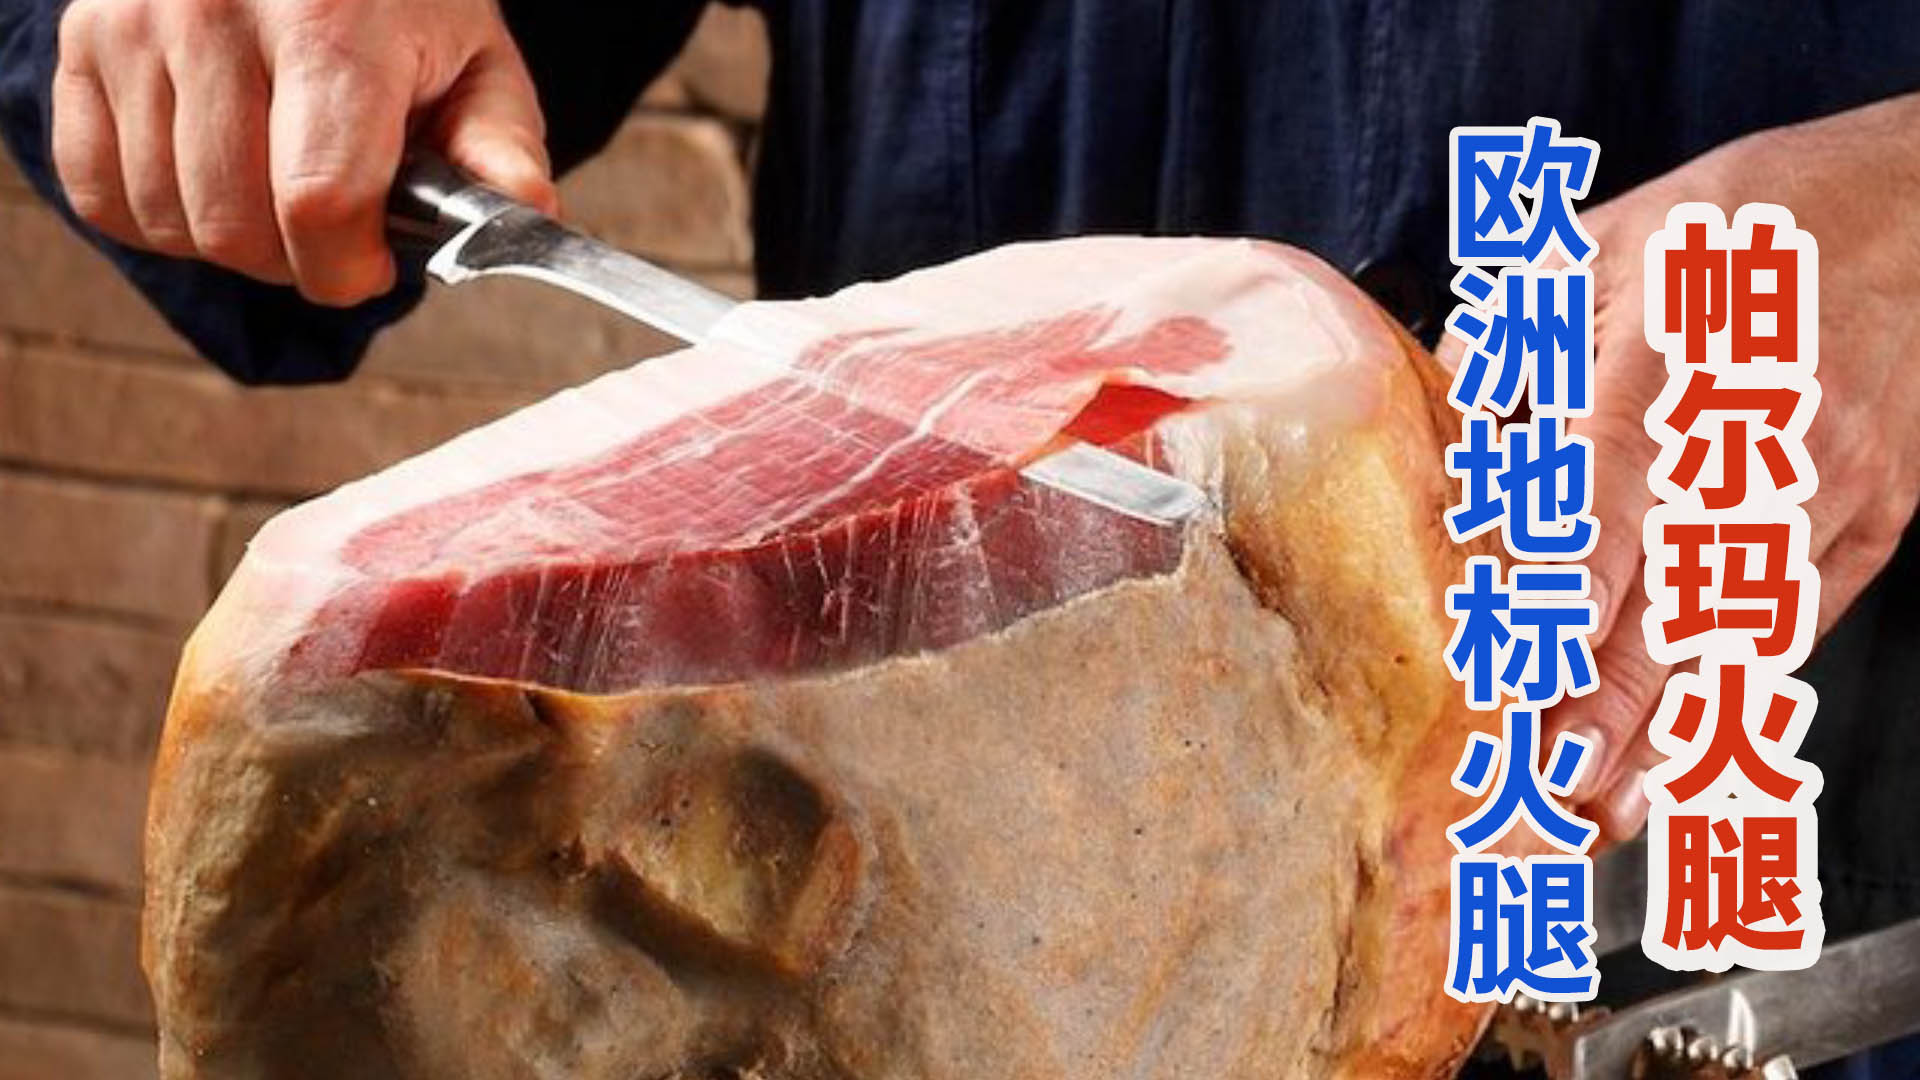 【大連食品】金華火腿整腿(8公斤) | 大連食品直營店 | 樂天市場Rakuten